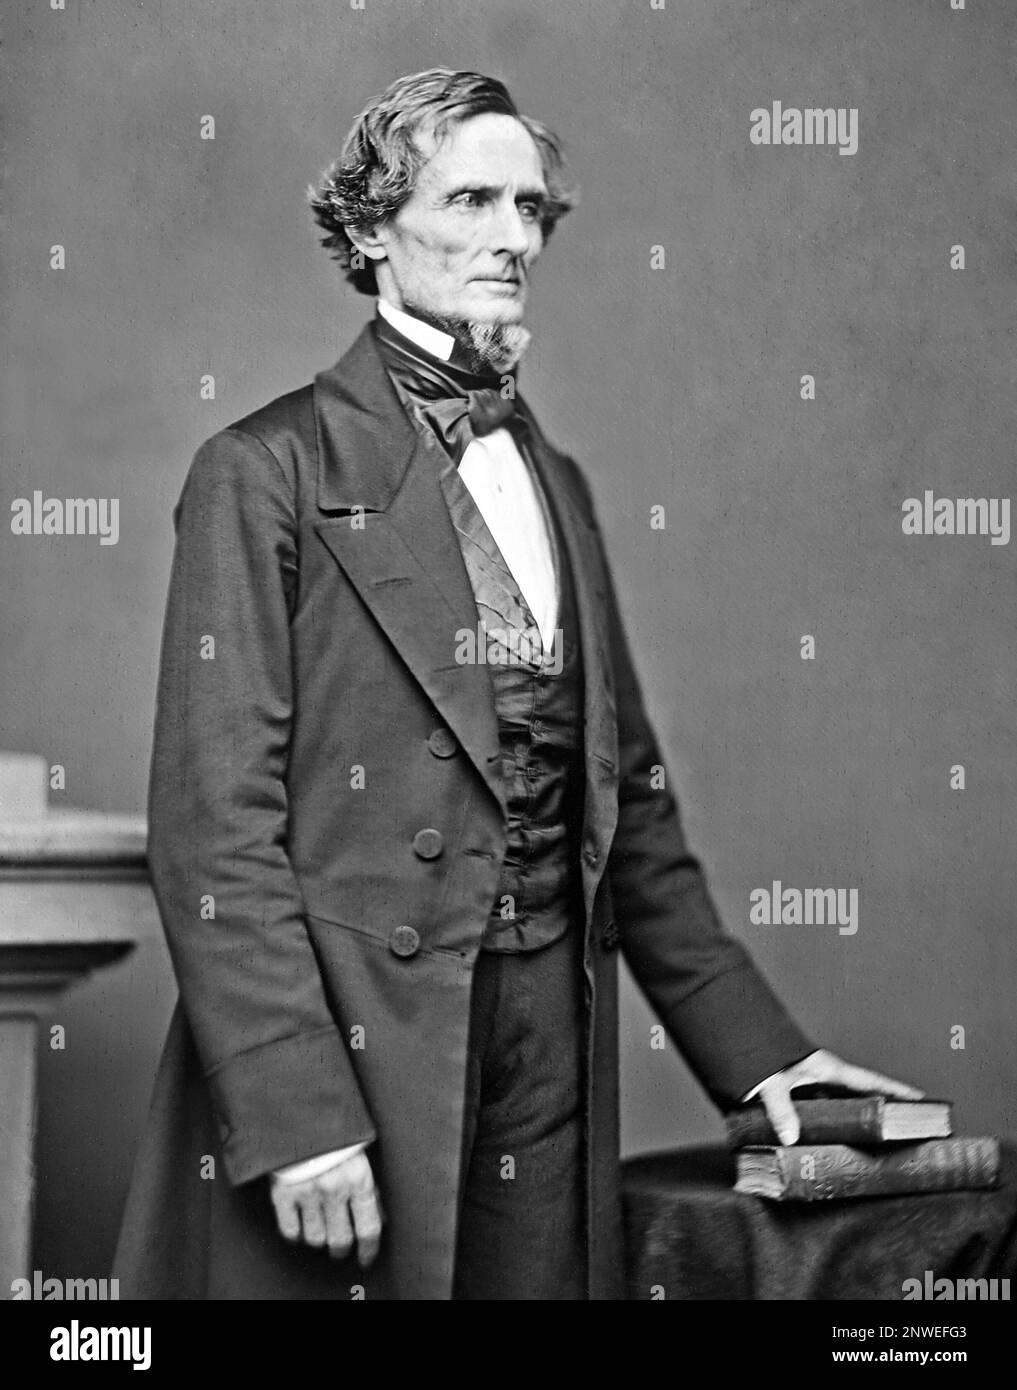 Jefferson F. Davis (1808 – 1889) politicien américain qui a été le premier et le seul président des États confédérés de 1861 à 1865. Banque D'Images